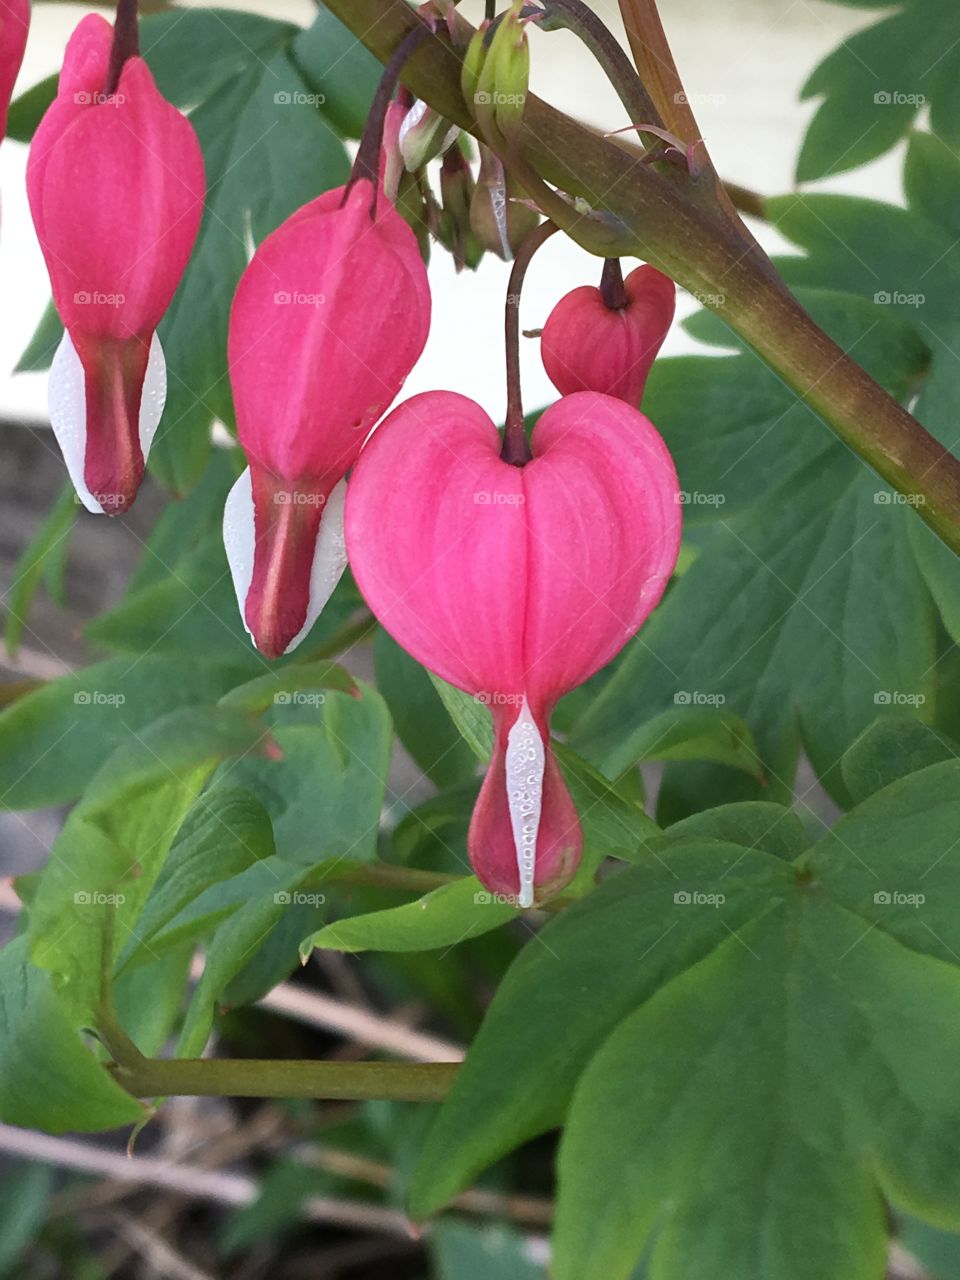 Bleeding heart flower